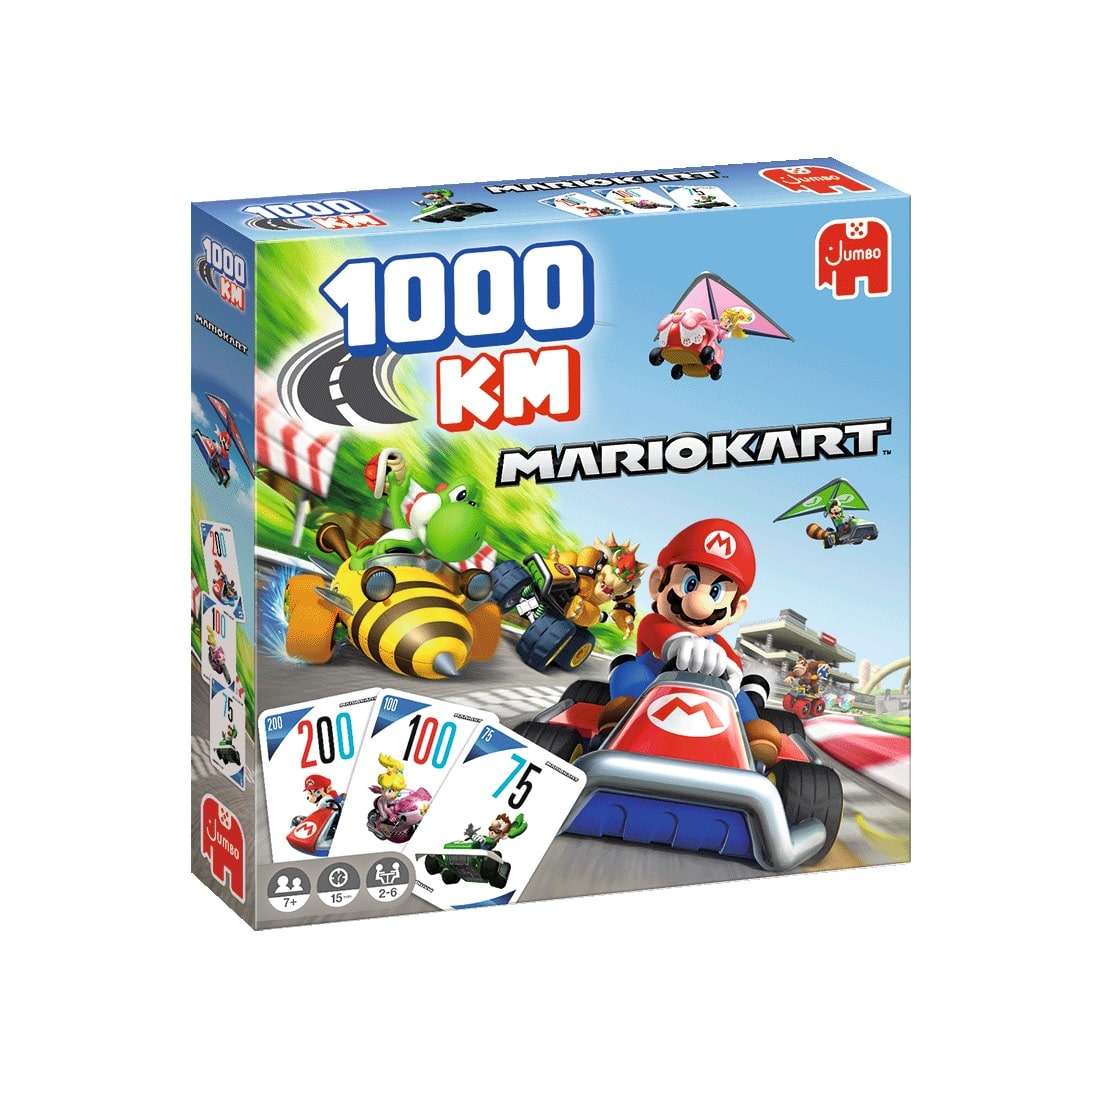 1000km Mario Kart